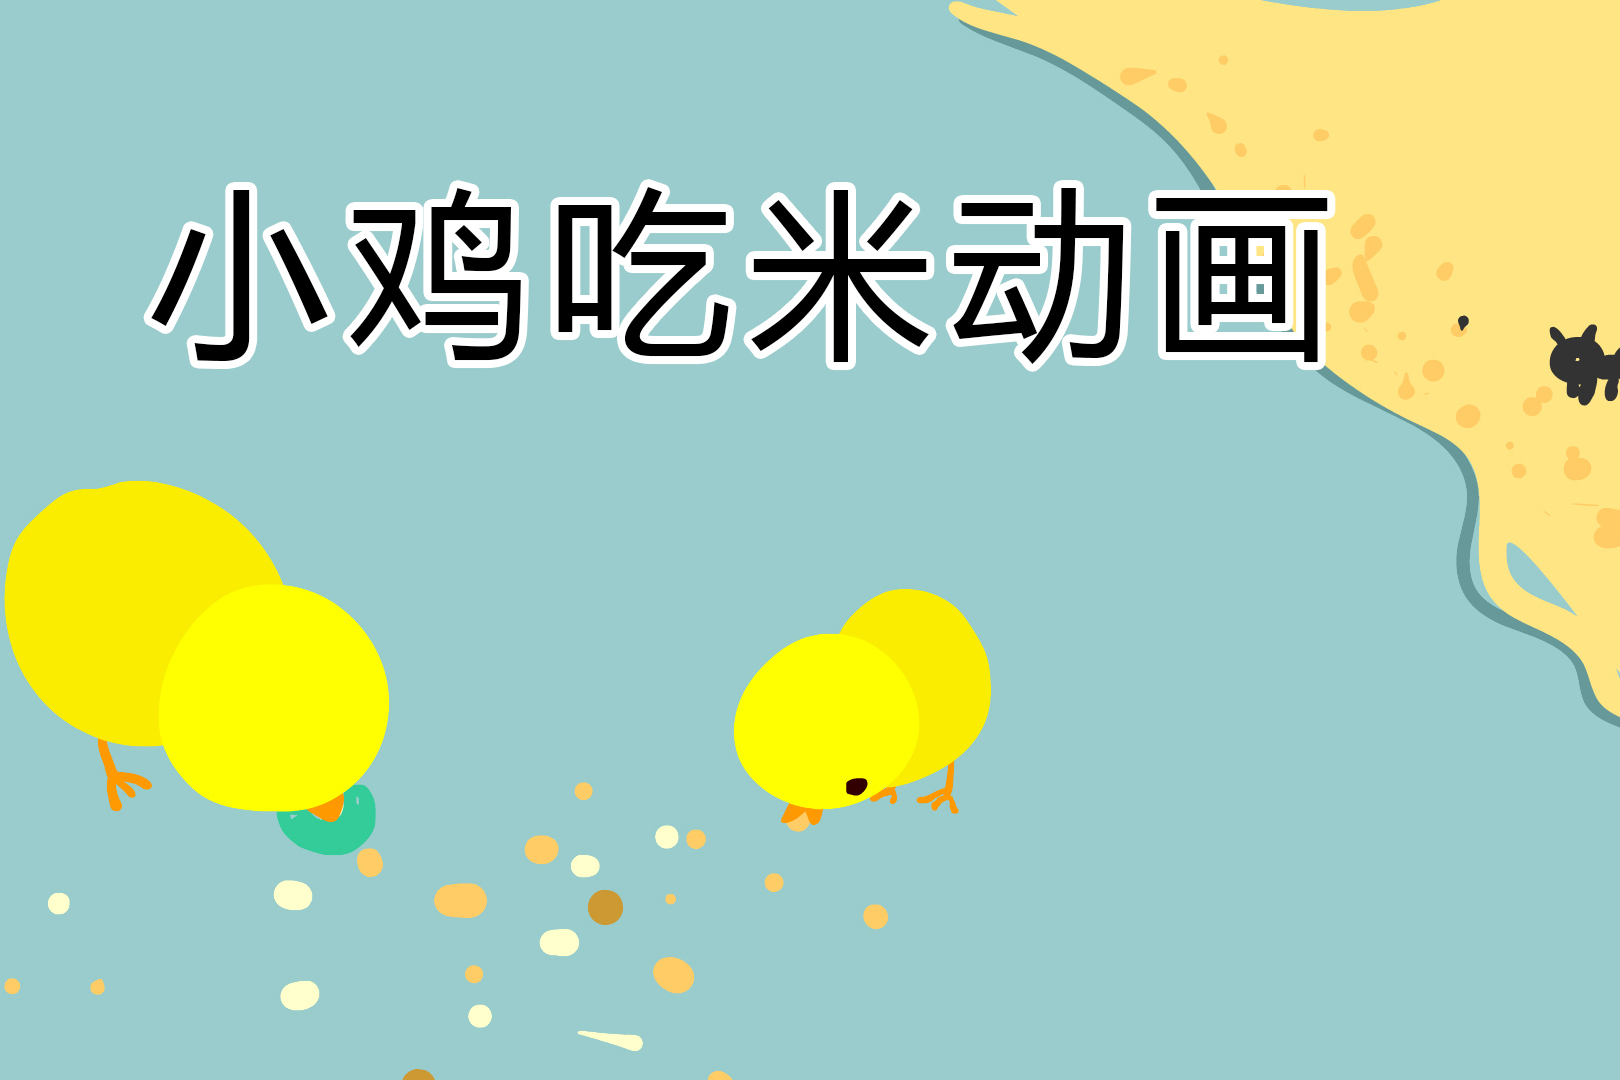 图萄老师带你用flash制作简单涂鸦动画《小鸡吃米图》animate动画视频